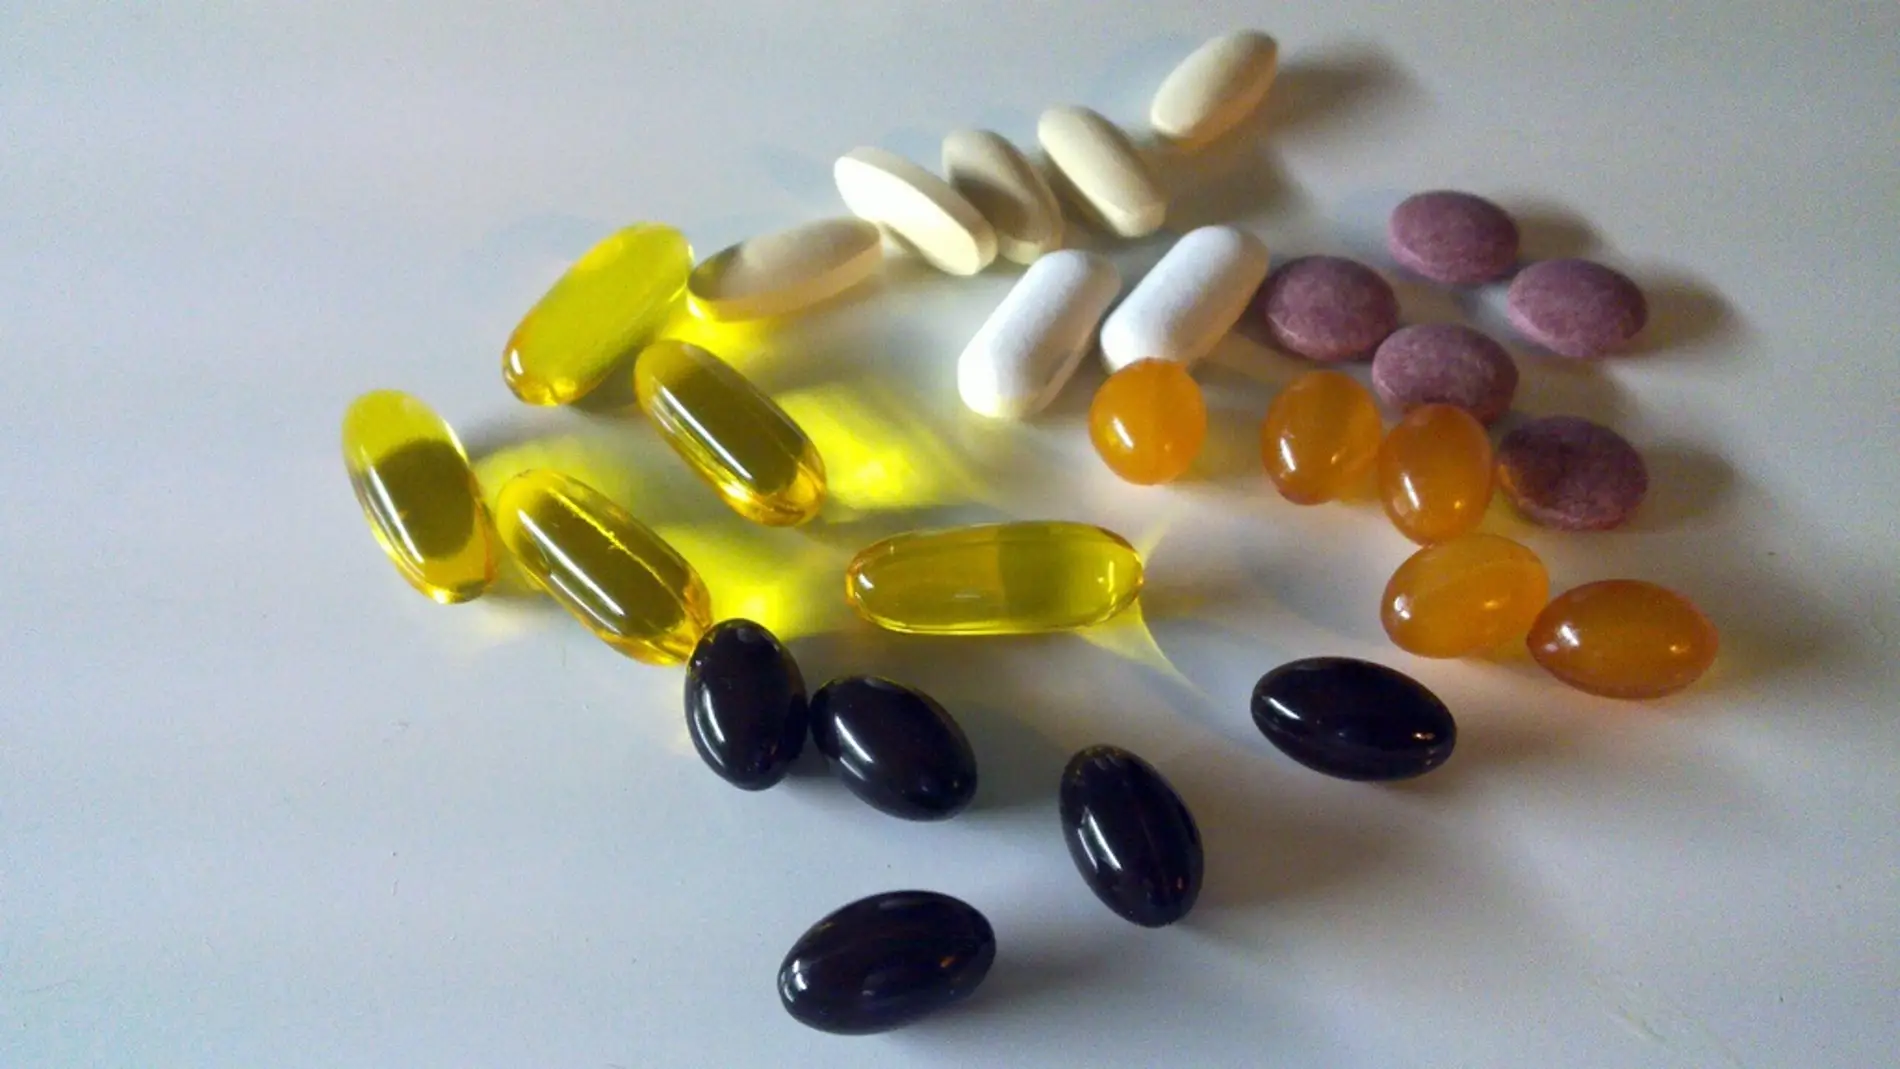 Un estudio advierte de sustancias dopantes en suplementos nutricionales